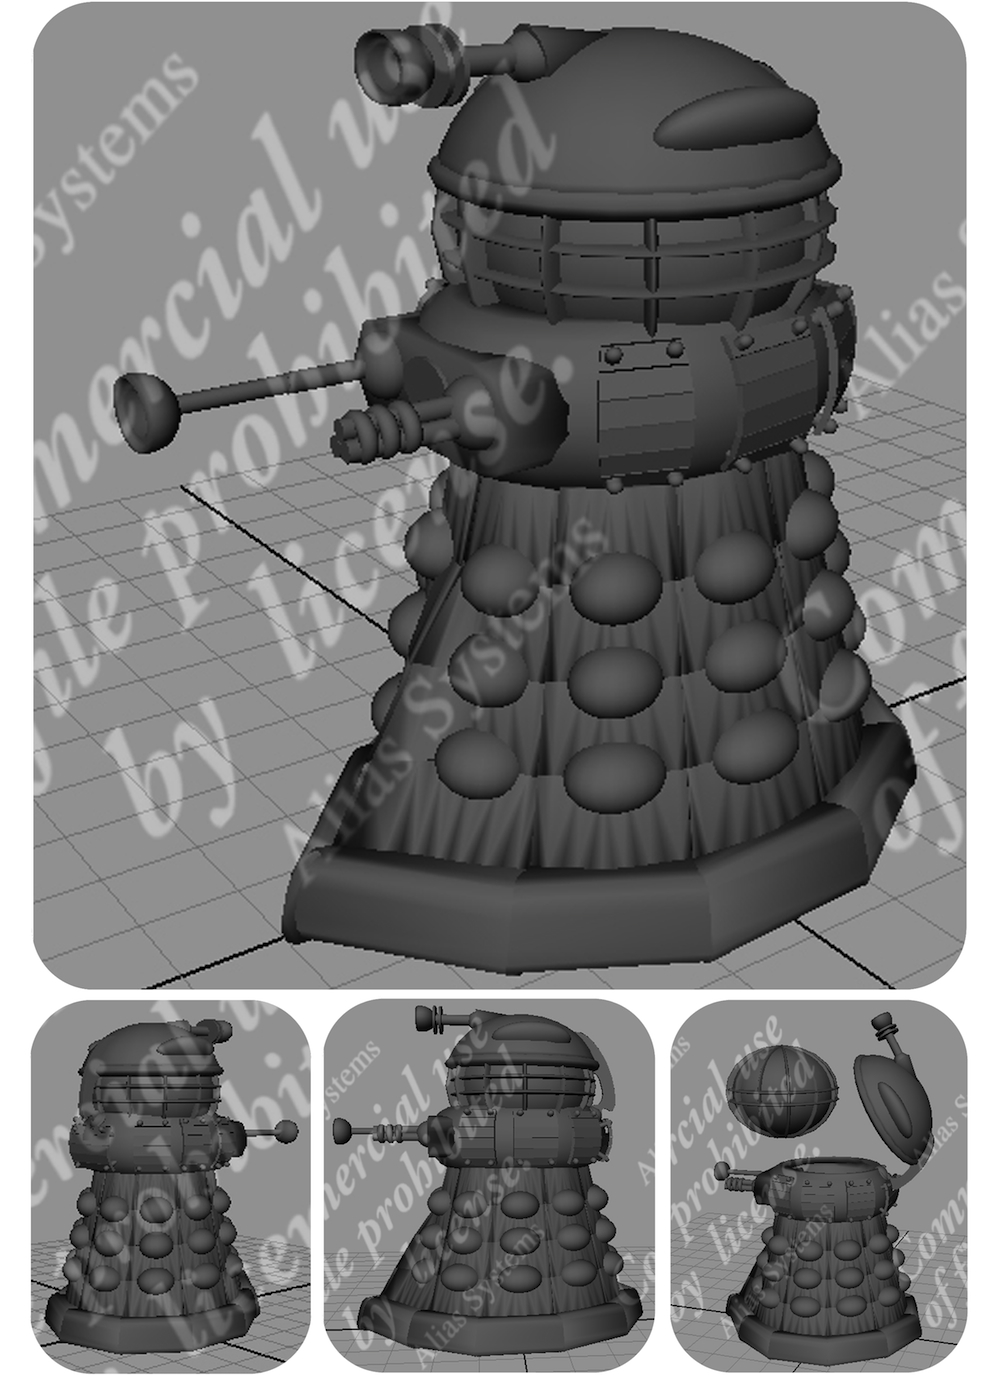 Modular digital Dalek (Doctor Who) design by Bruce Whistlecraft, Doktor A.